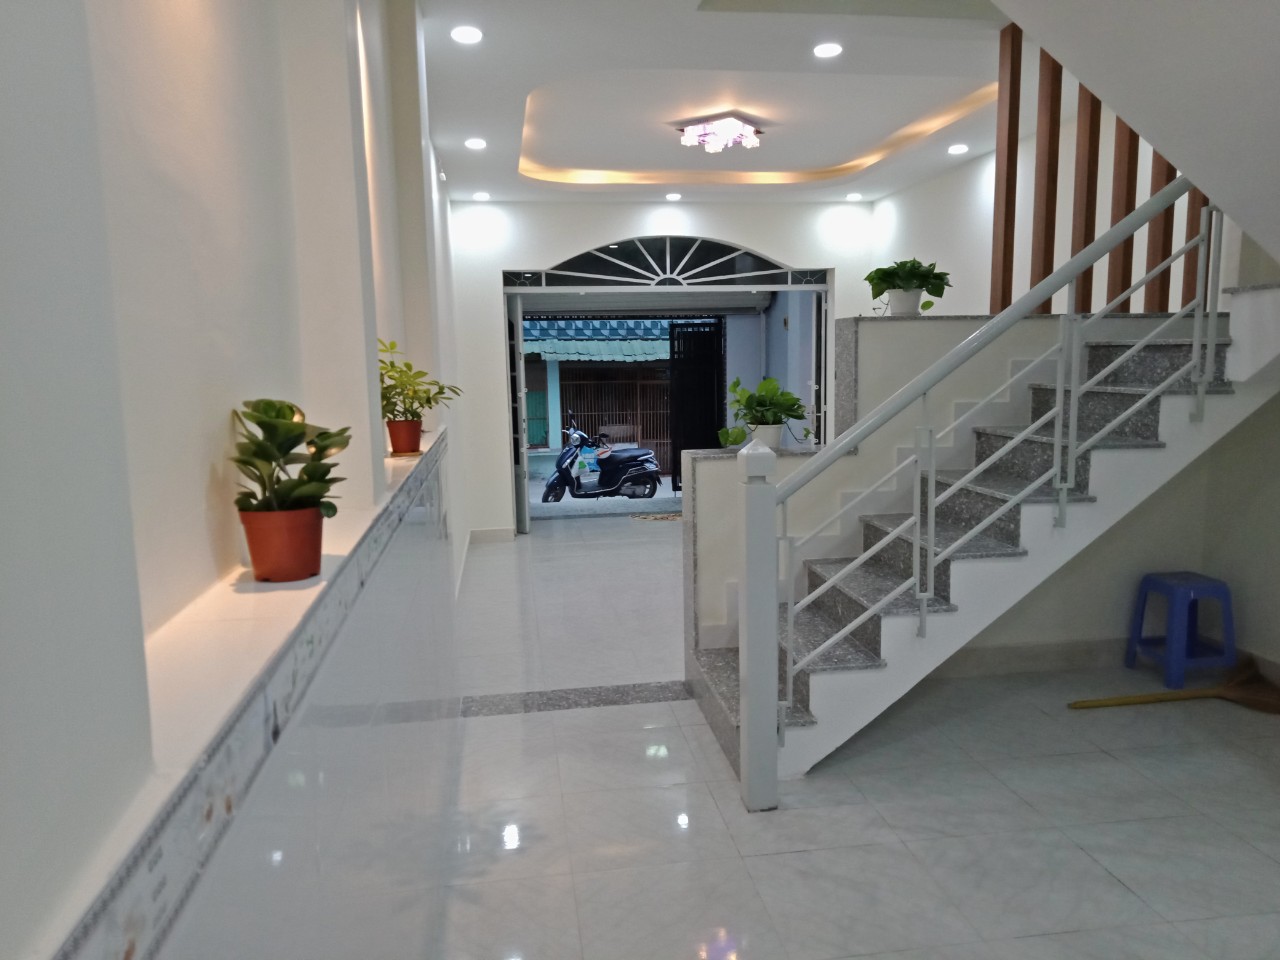 Mua bán căn nhà mới xây giá rẻ trung tâm quận Thủ Đức, phường Tam Bình